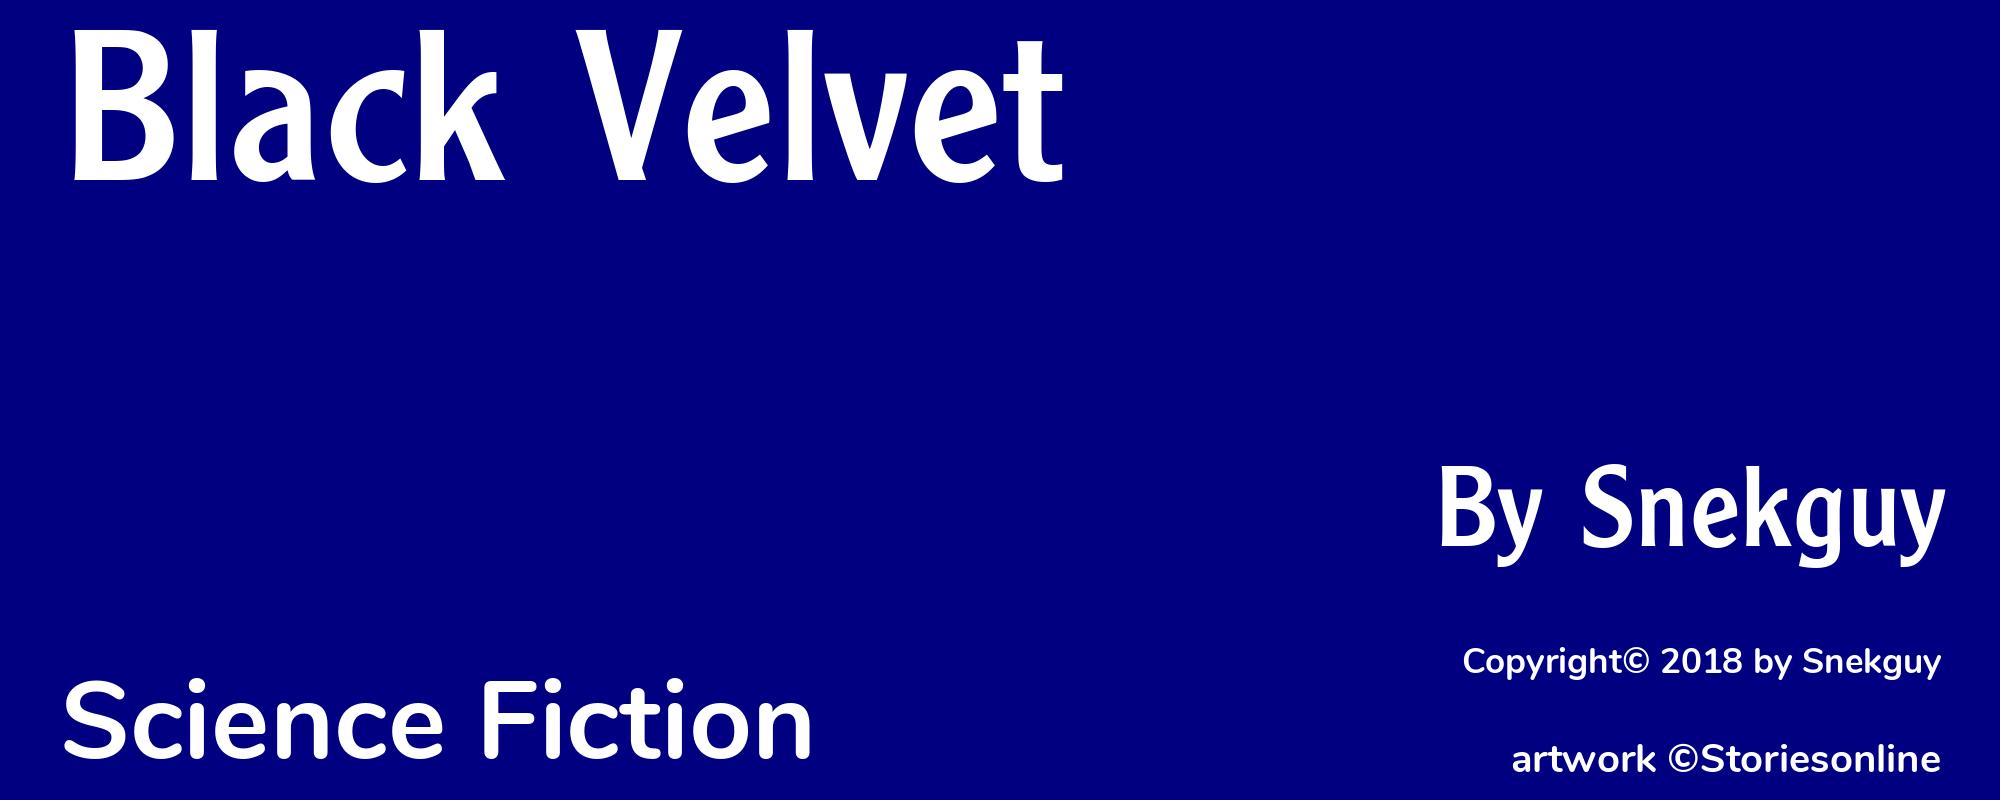 Black Velvet - Cover